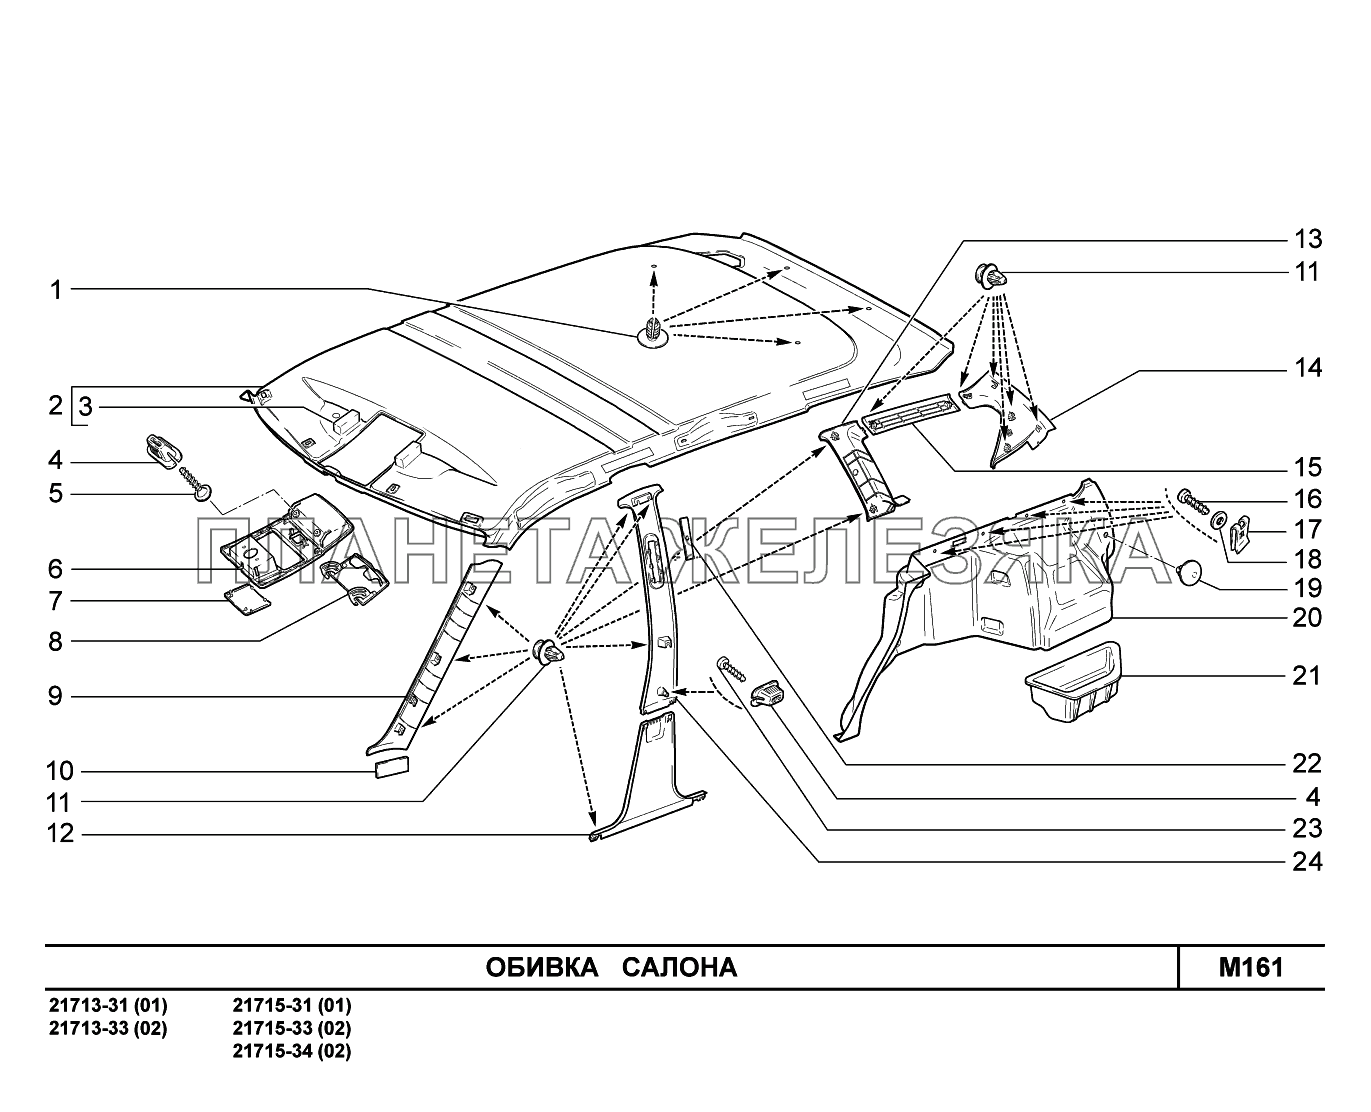 M161. Обивка салона ВАЗ-2170 